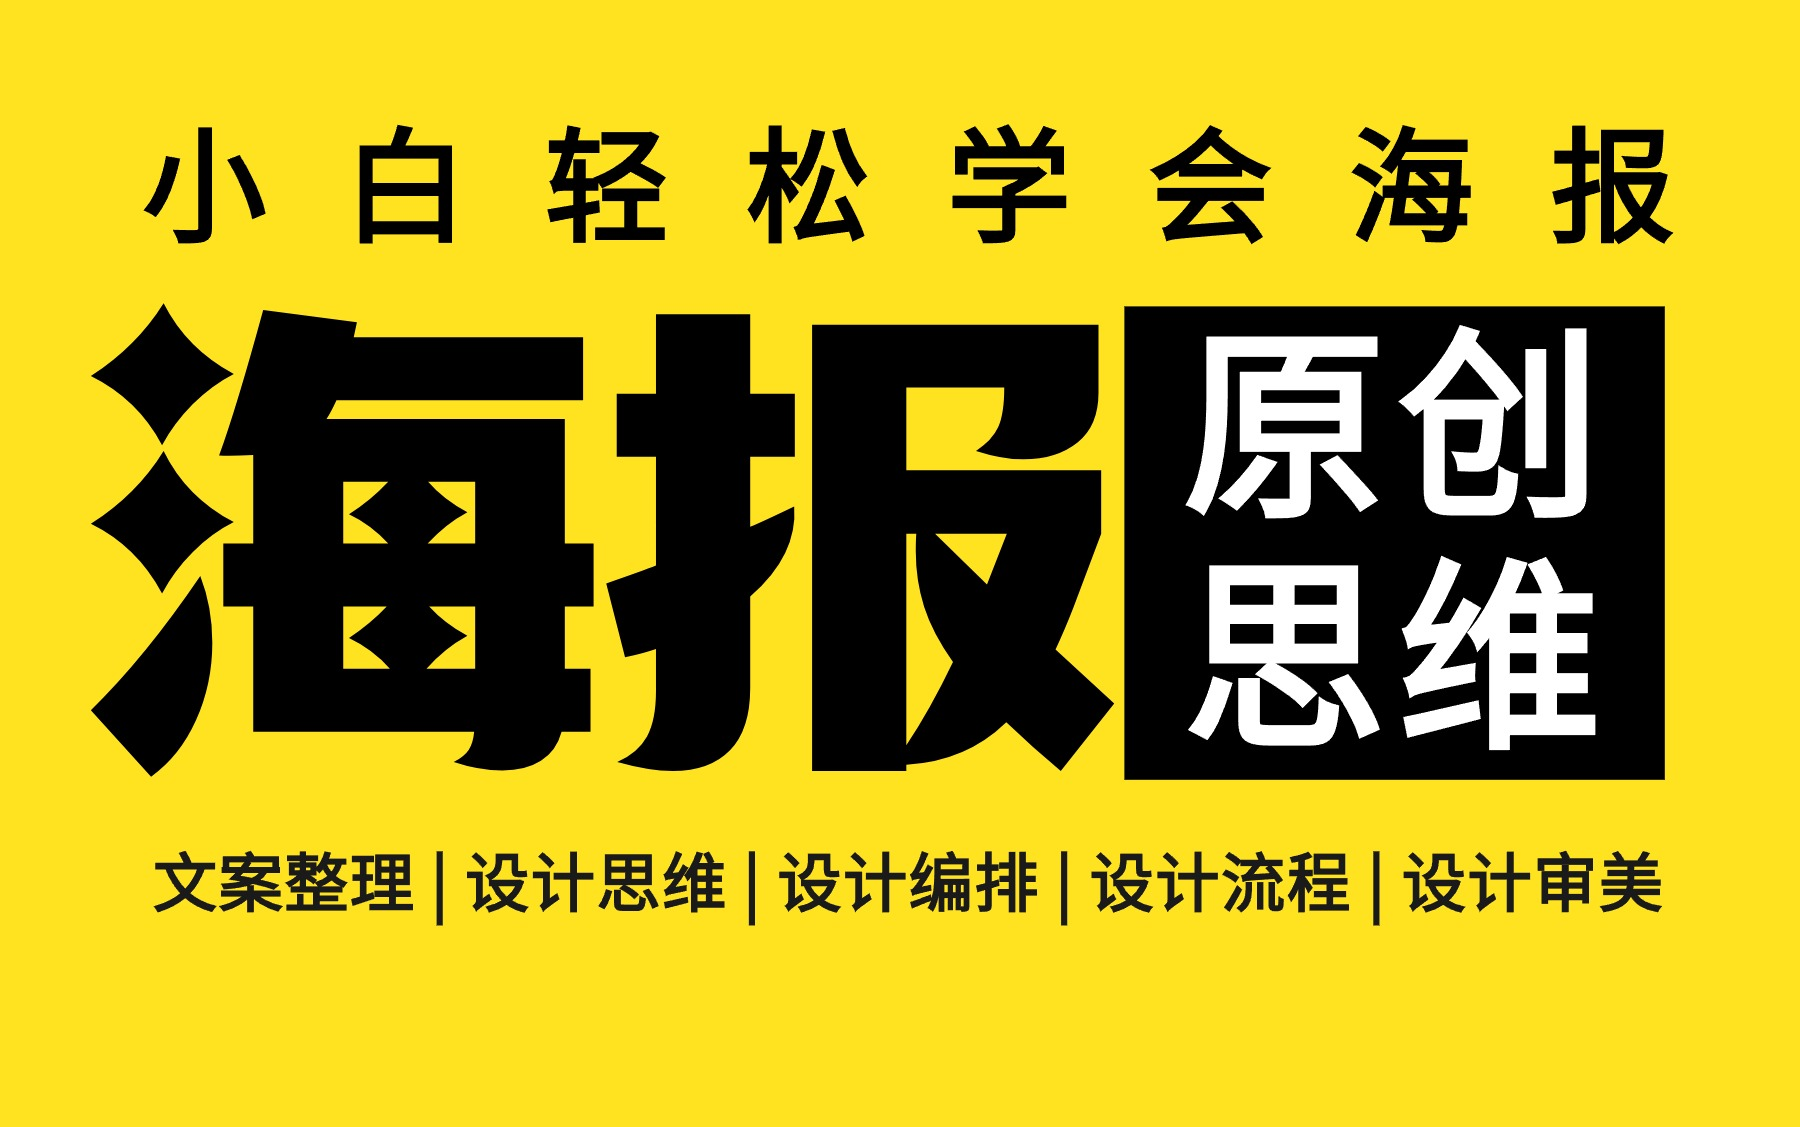 书香重庆海报设计思路图片